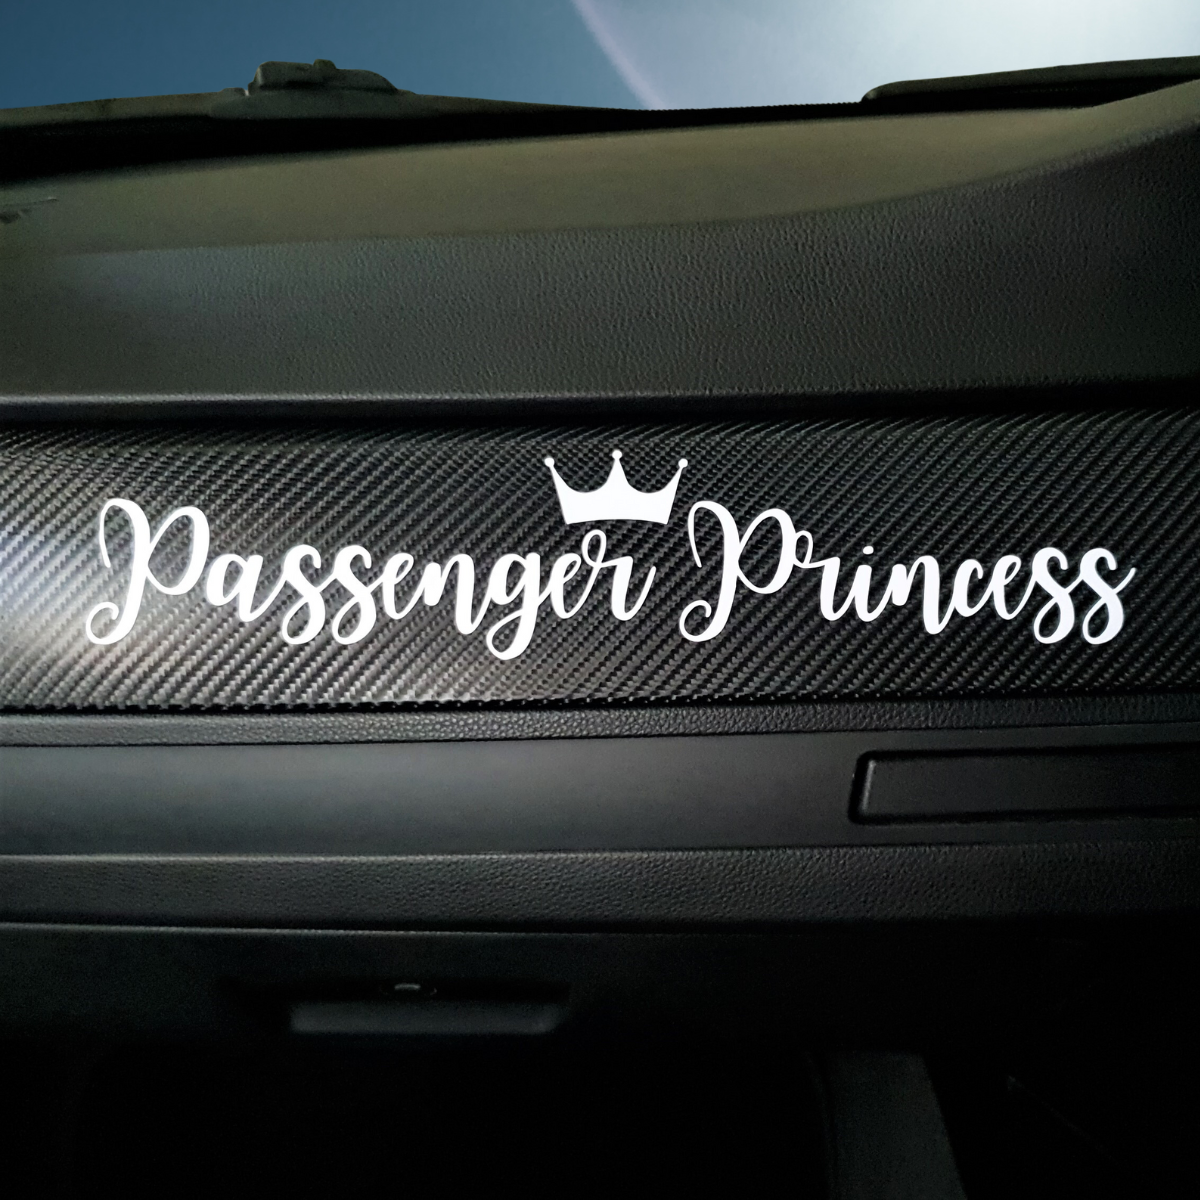 https://vipervinyl.com/cdn/shop/files/passenger_princess_car_decal.png?v=1691965533&width=1445